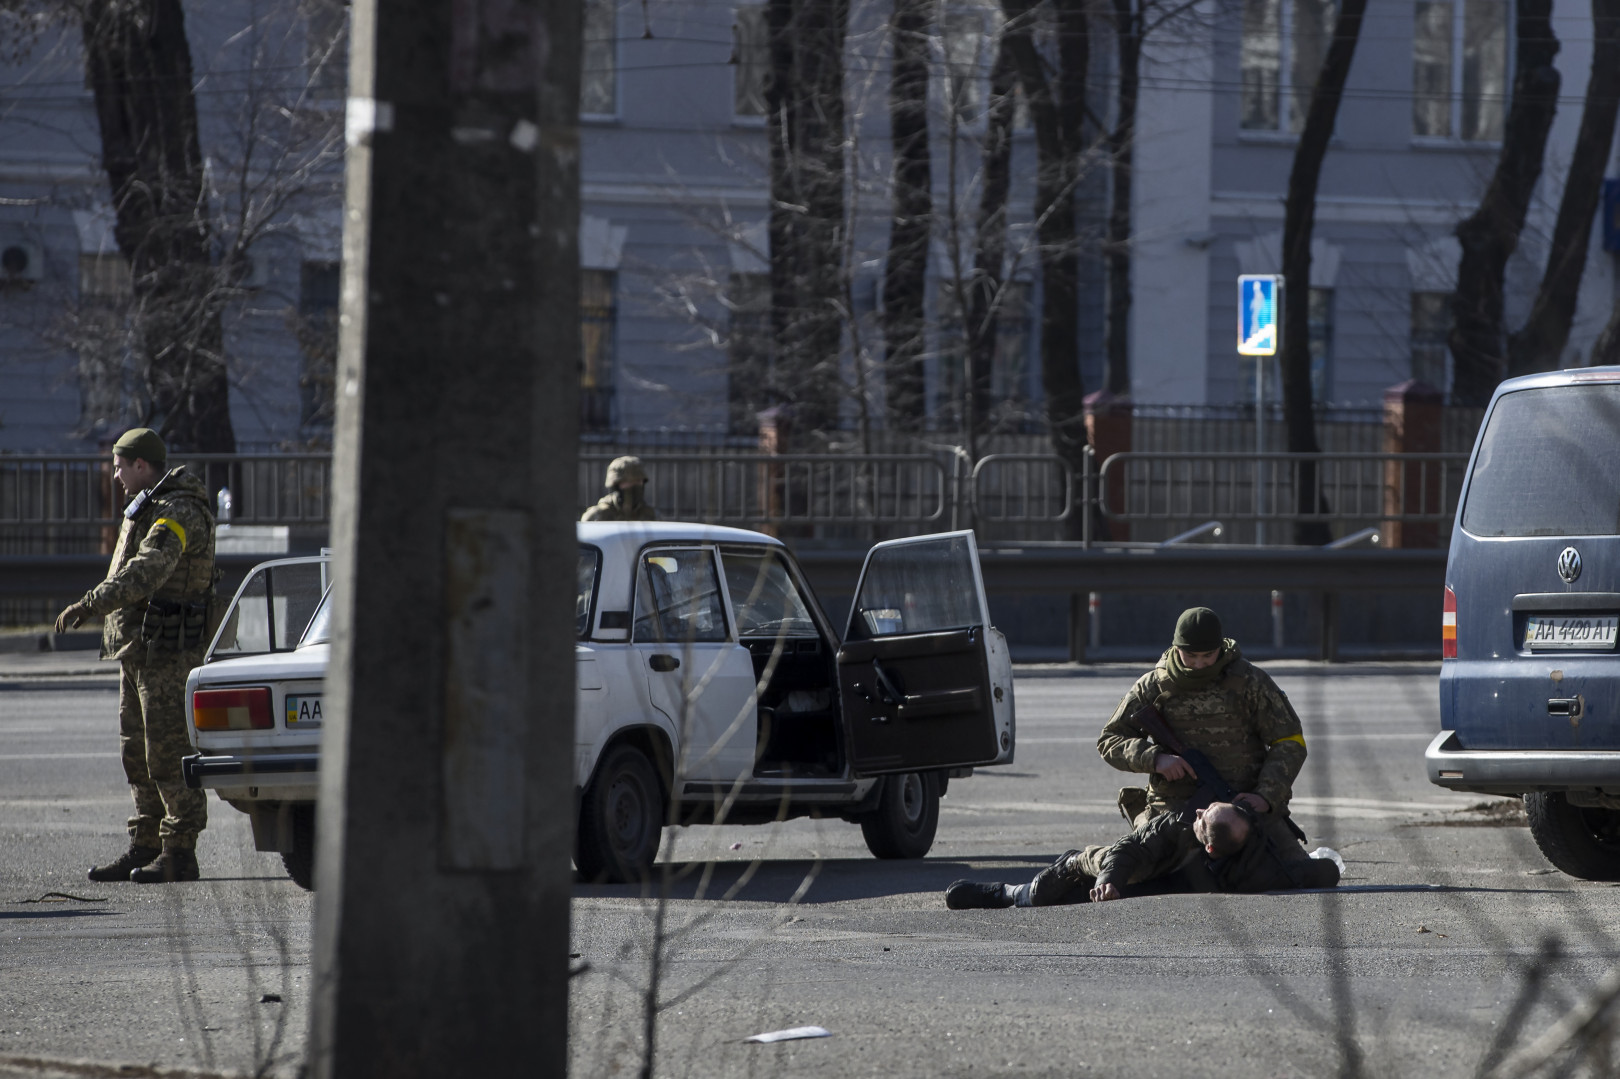 Egy bombagyanús autó sofőrjét teperték földre a katonák, miután a férfi nem akart megállni az ellenőrzőponton – Fotó: Huszti István / Telex.hu